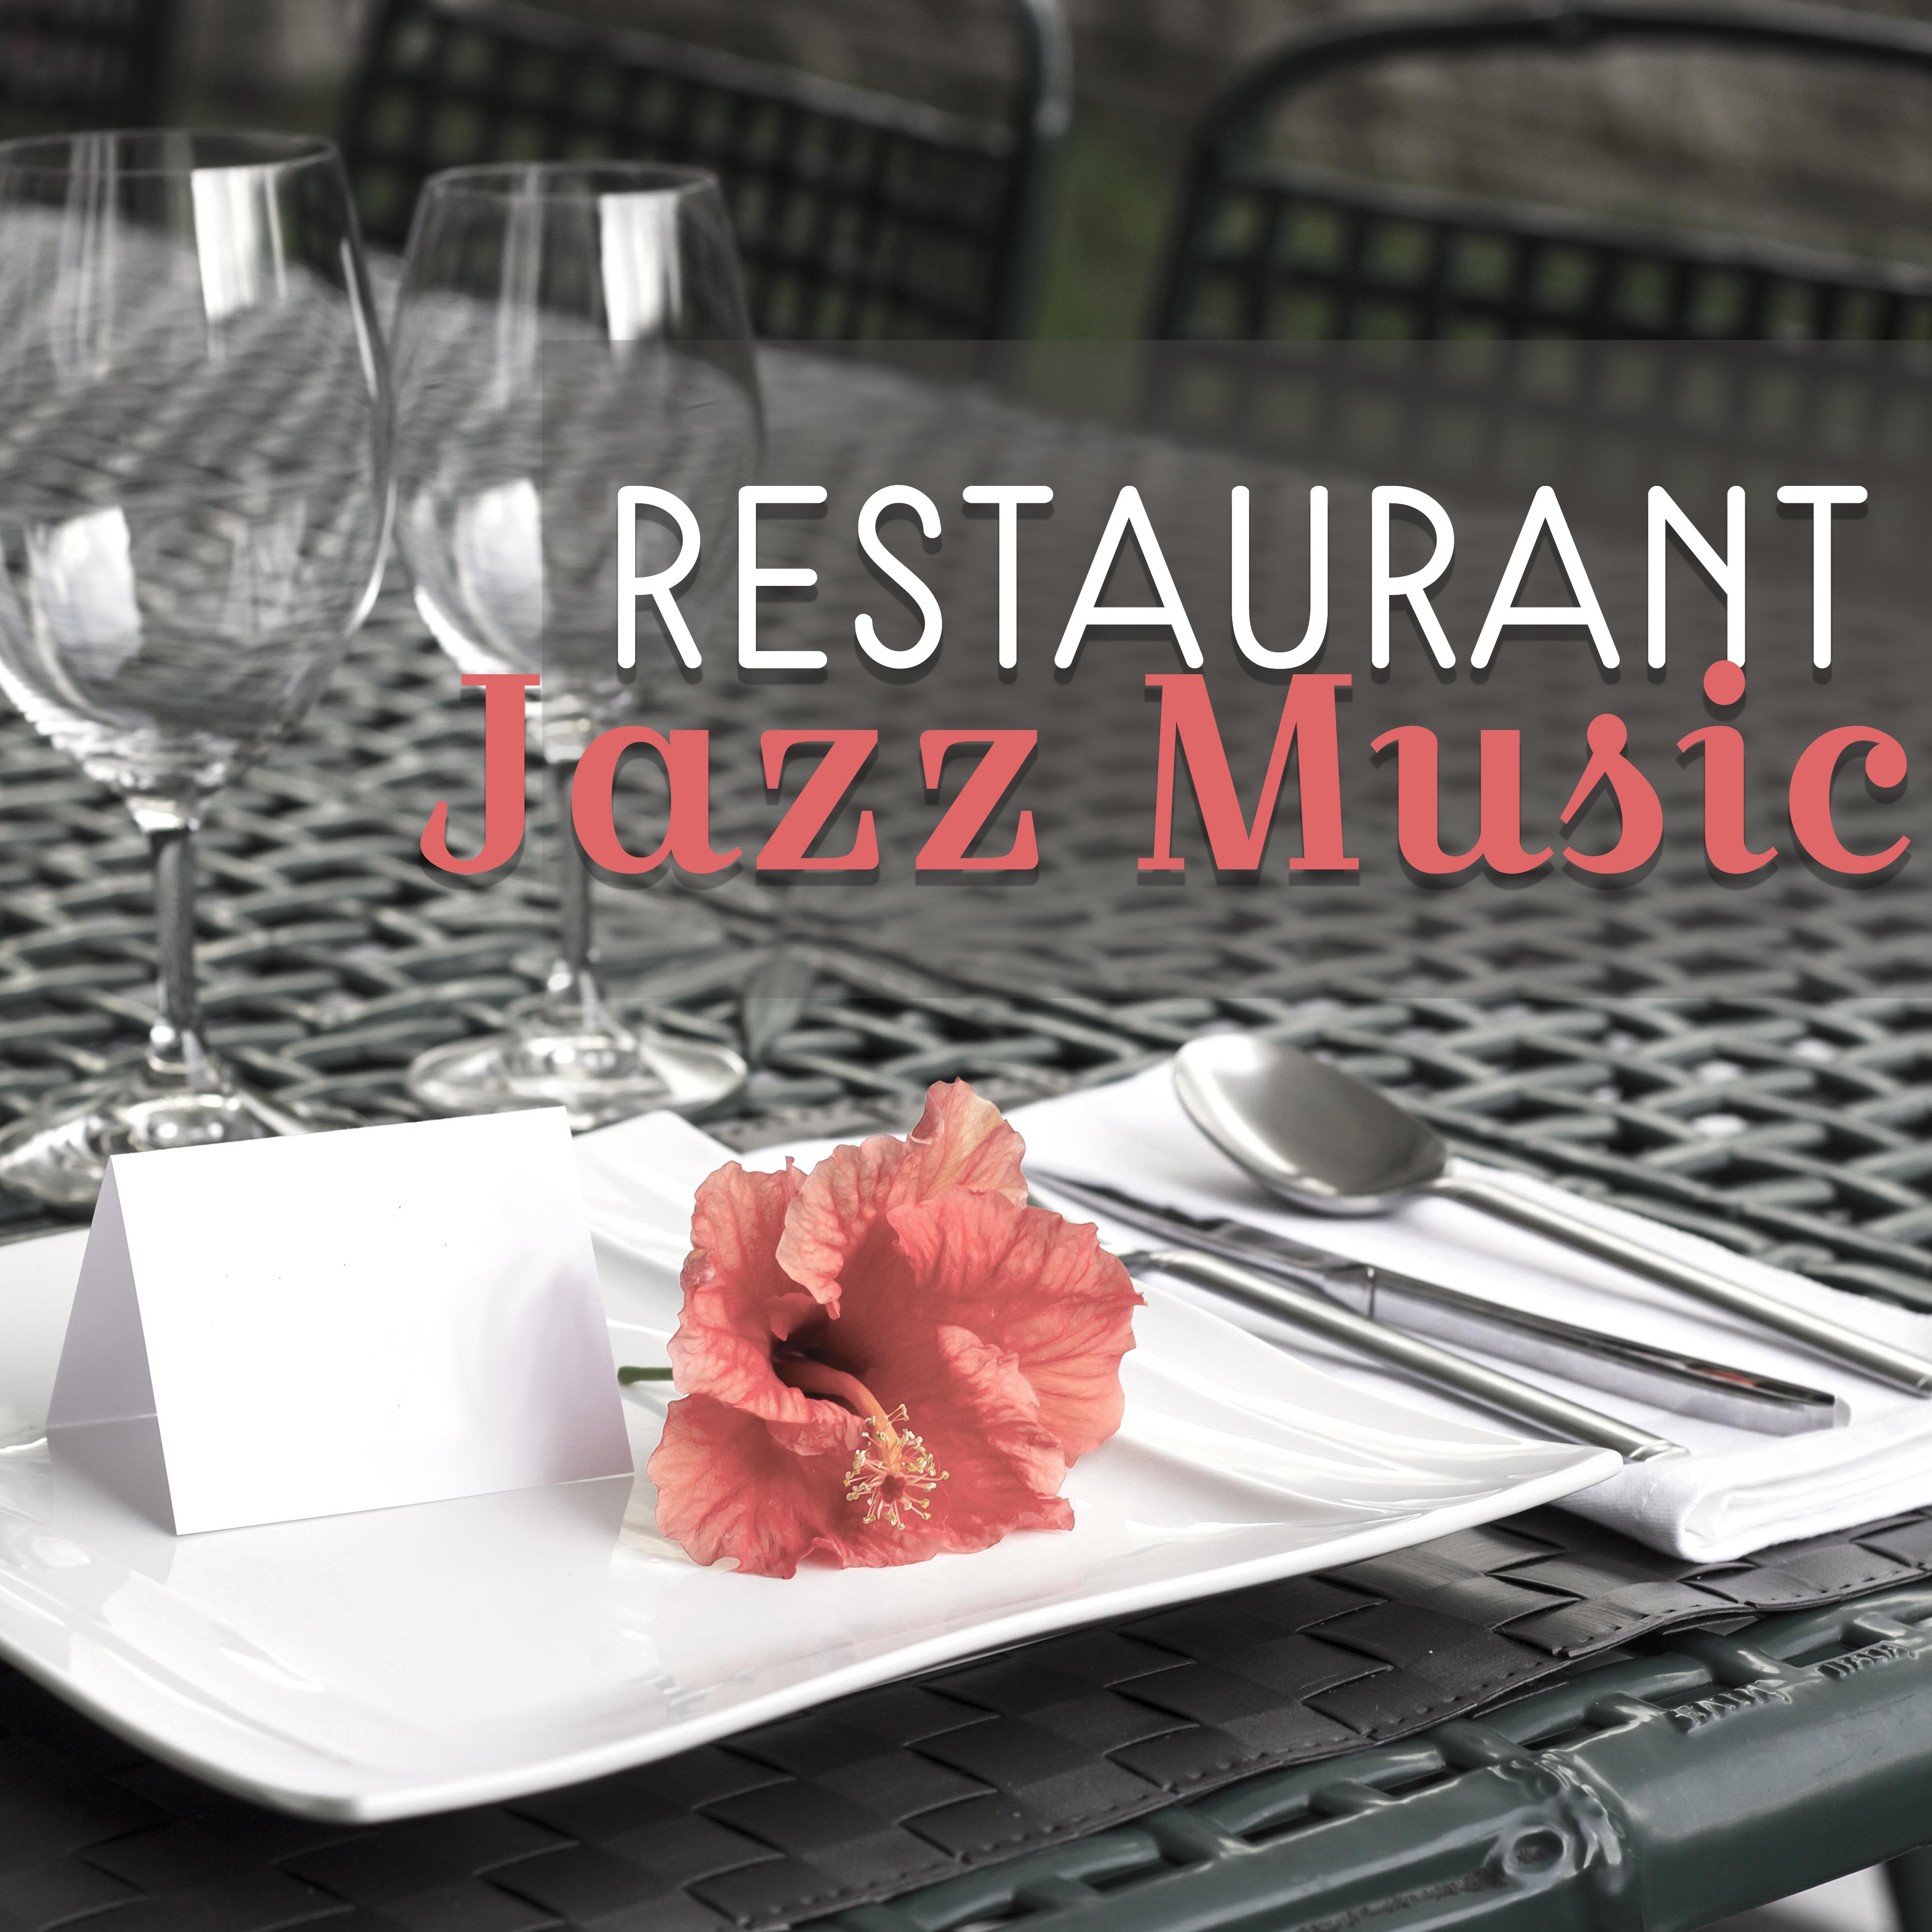 Restaurant Jazz Music  Best Background Piano Music, Jazz for Restaurant, Dinner Time, Coffee Jazz